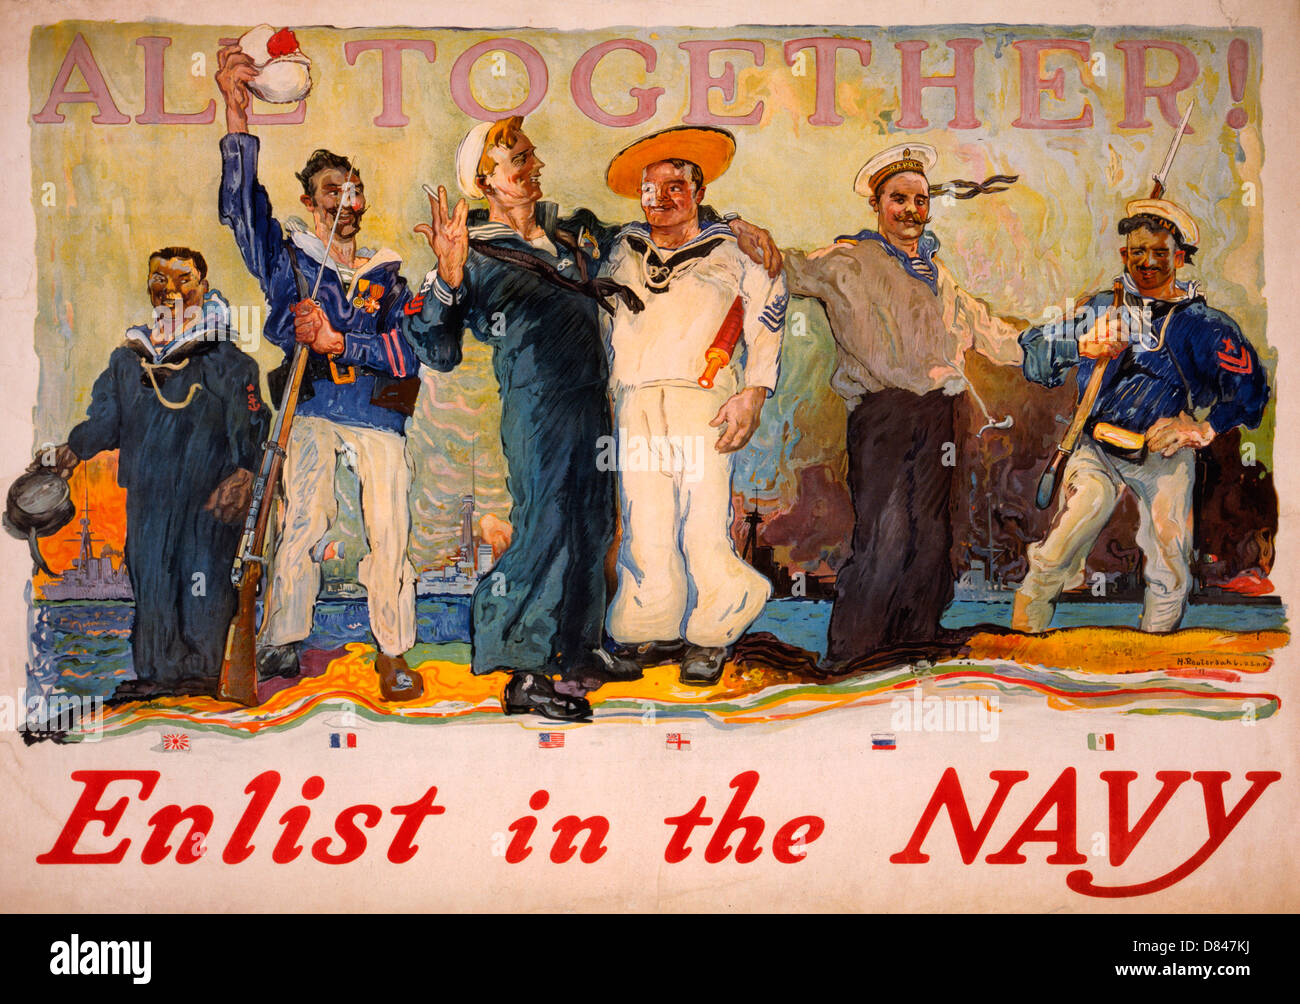 Alle zusammen! Tragen Sie in die Marine-Plakat zeigt einen amerikanischen Seemann unter Seglern aus verschiedenen Ländern ein. Vintage Plakat 1917 Stockfoto